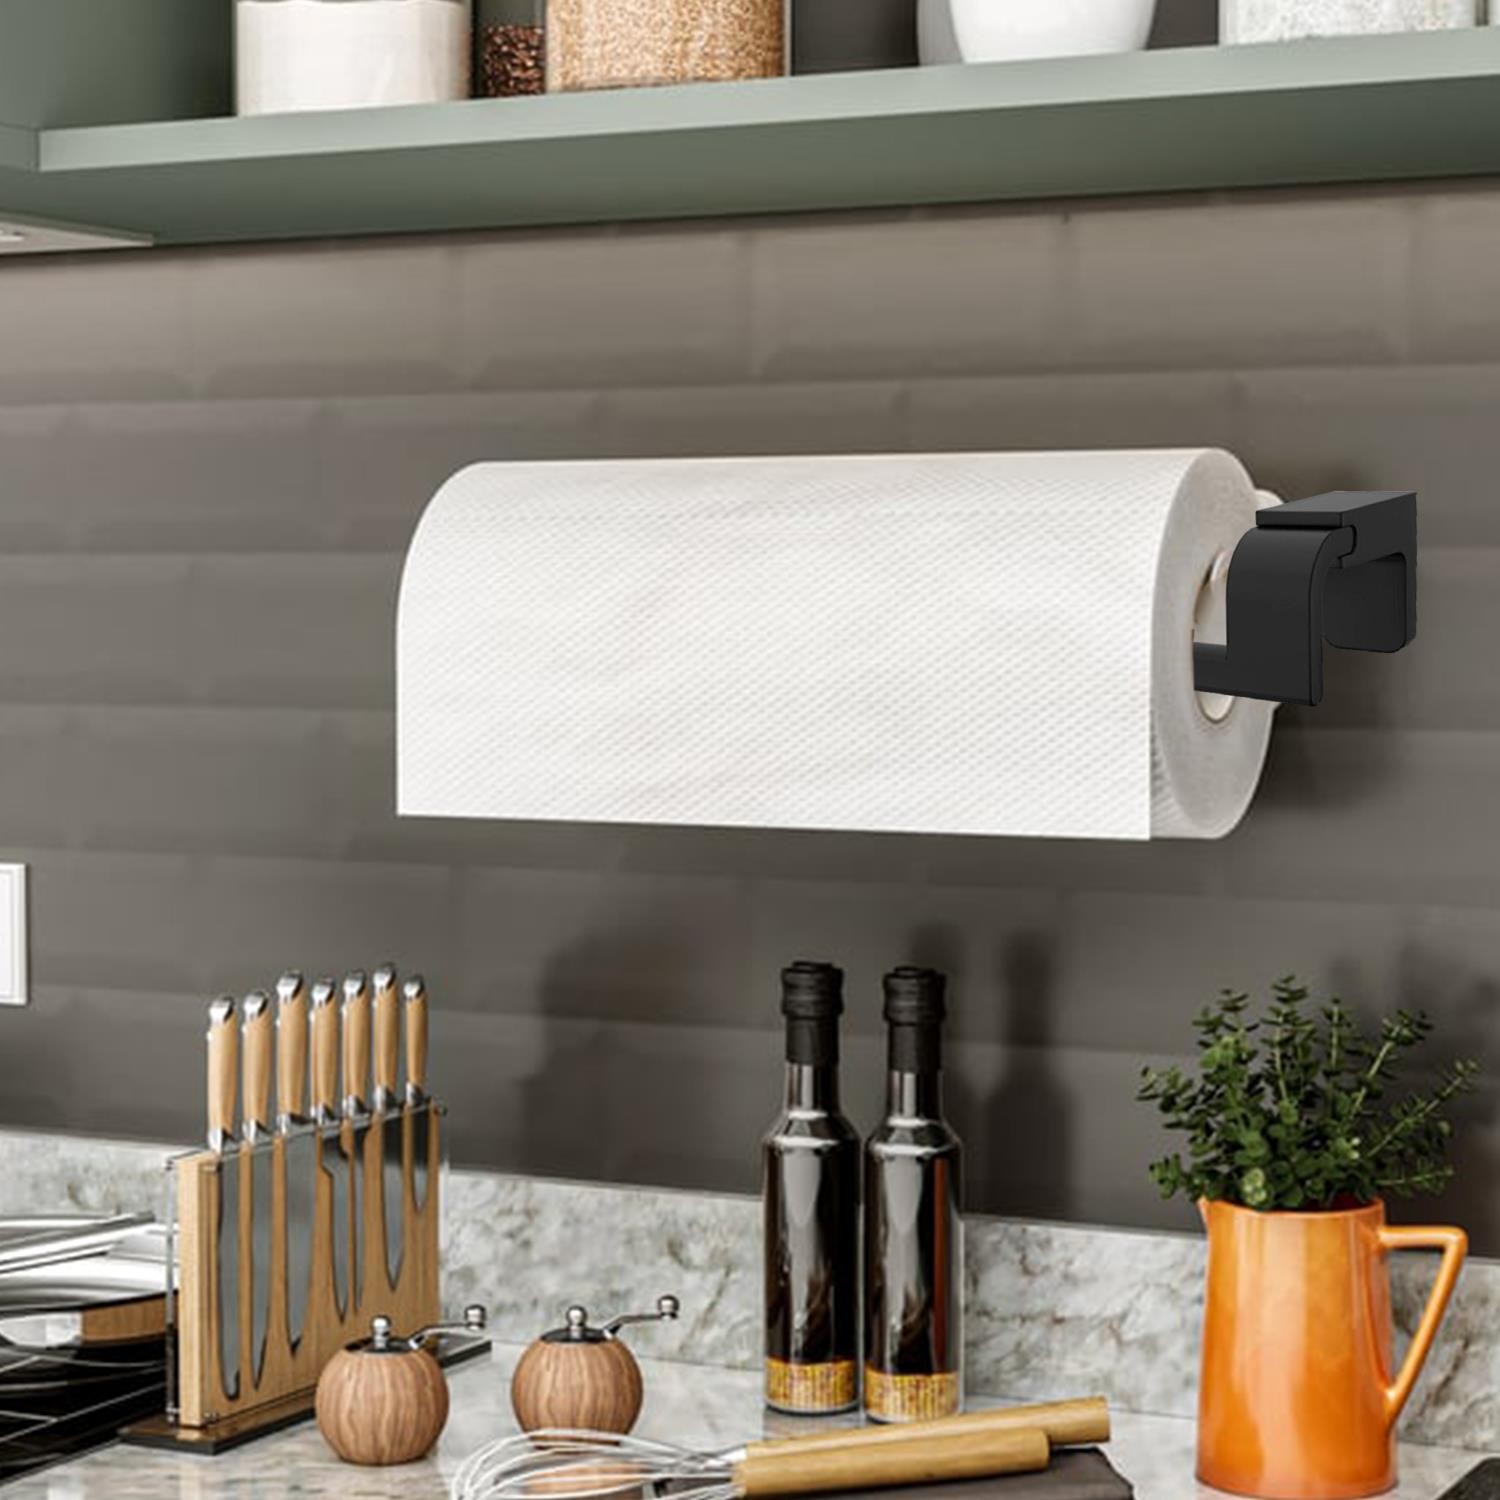 Banyo Lavabo Mutfak Aparat Uzun Kağıt Havluluk Standı Kağıtlık 26 cm Paslanmaz Metal Sağlam Siyah